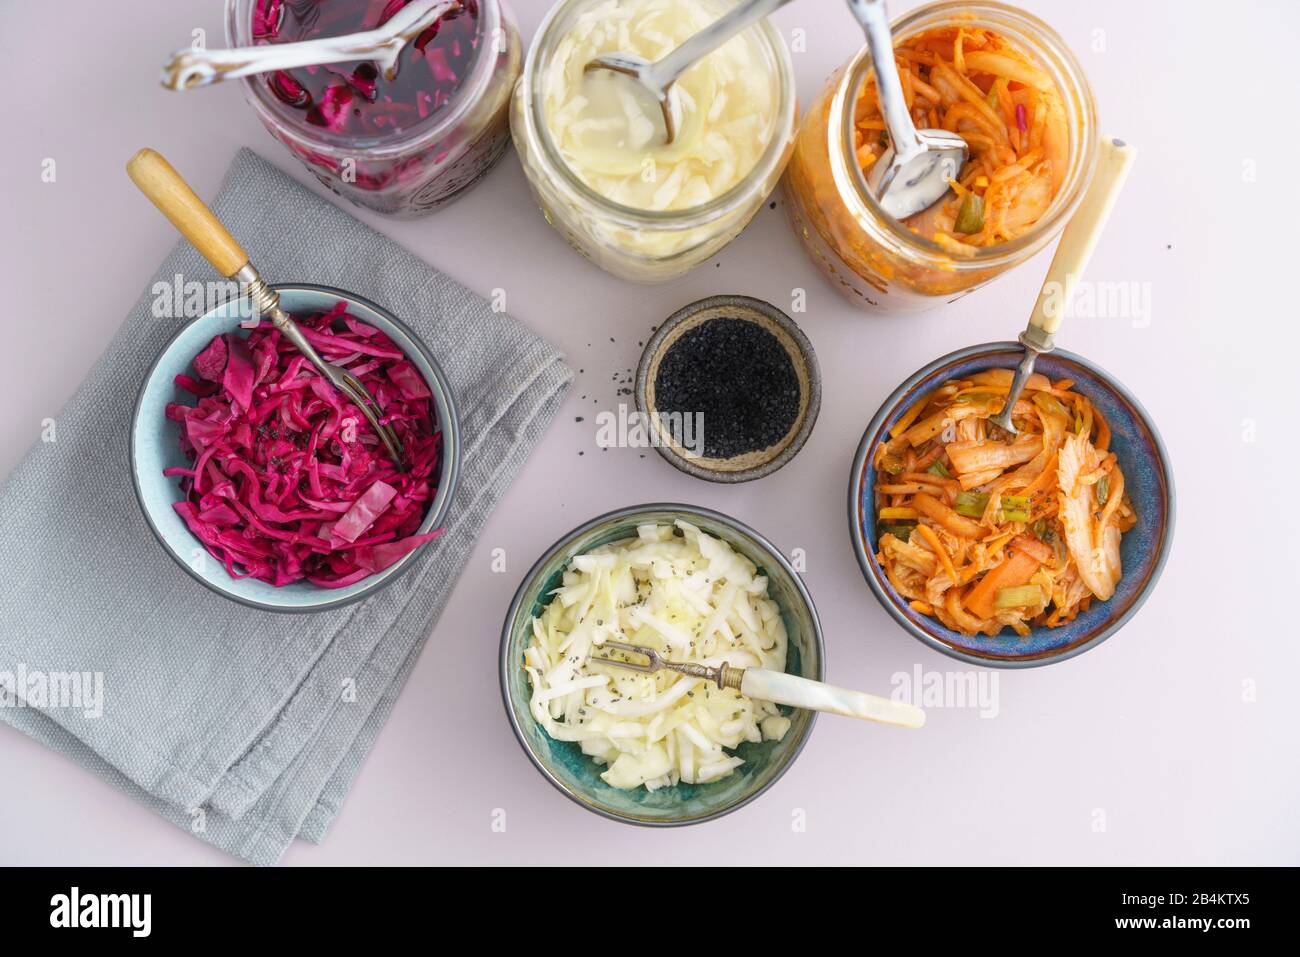 Repollo blanco, kimchi y repollo rojo fermentados, encurtidos en tarros de conservación, servidos en tazones pequeños Foto de stock